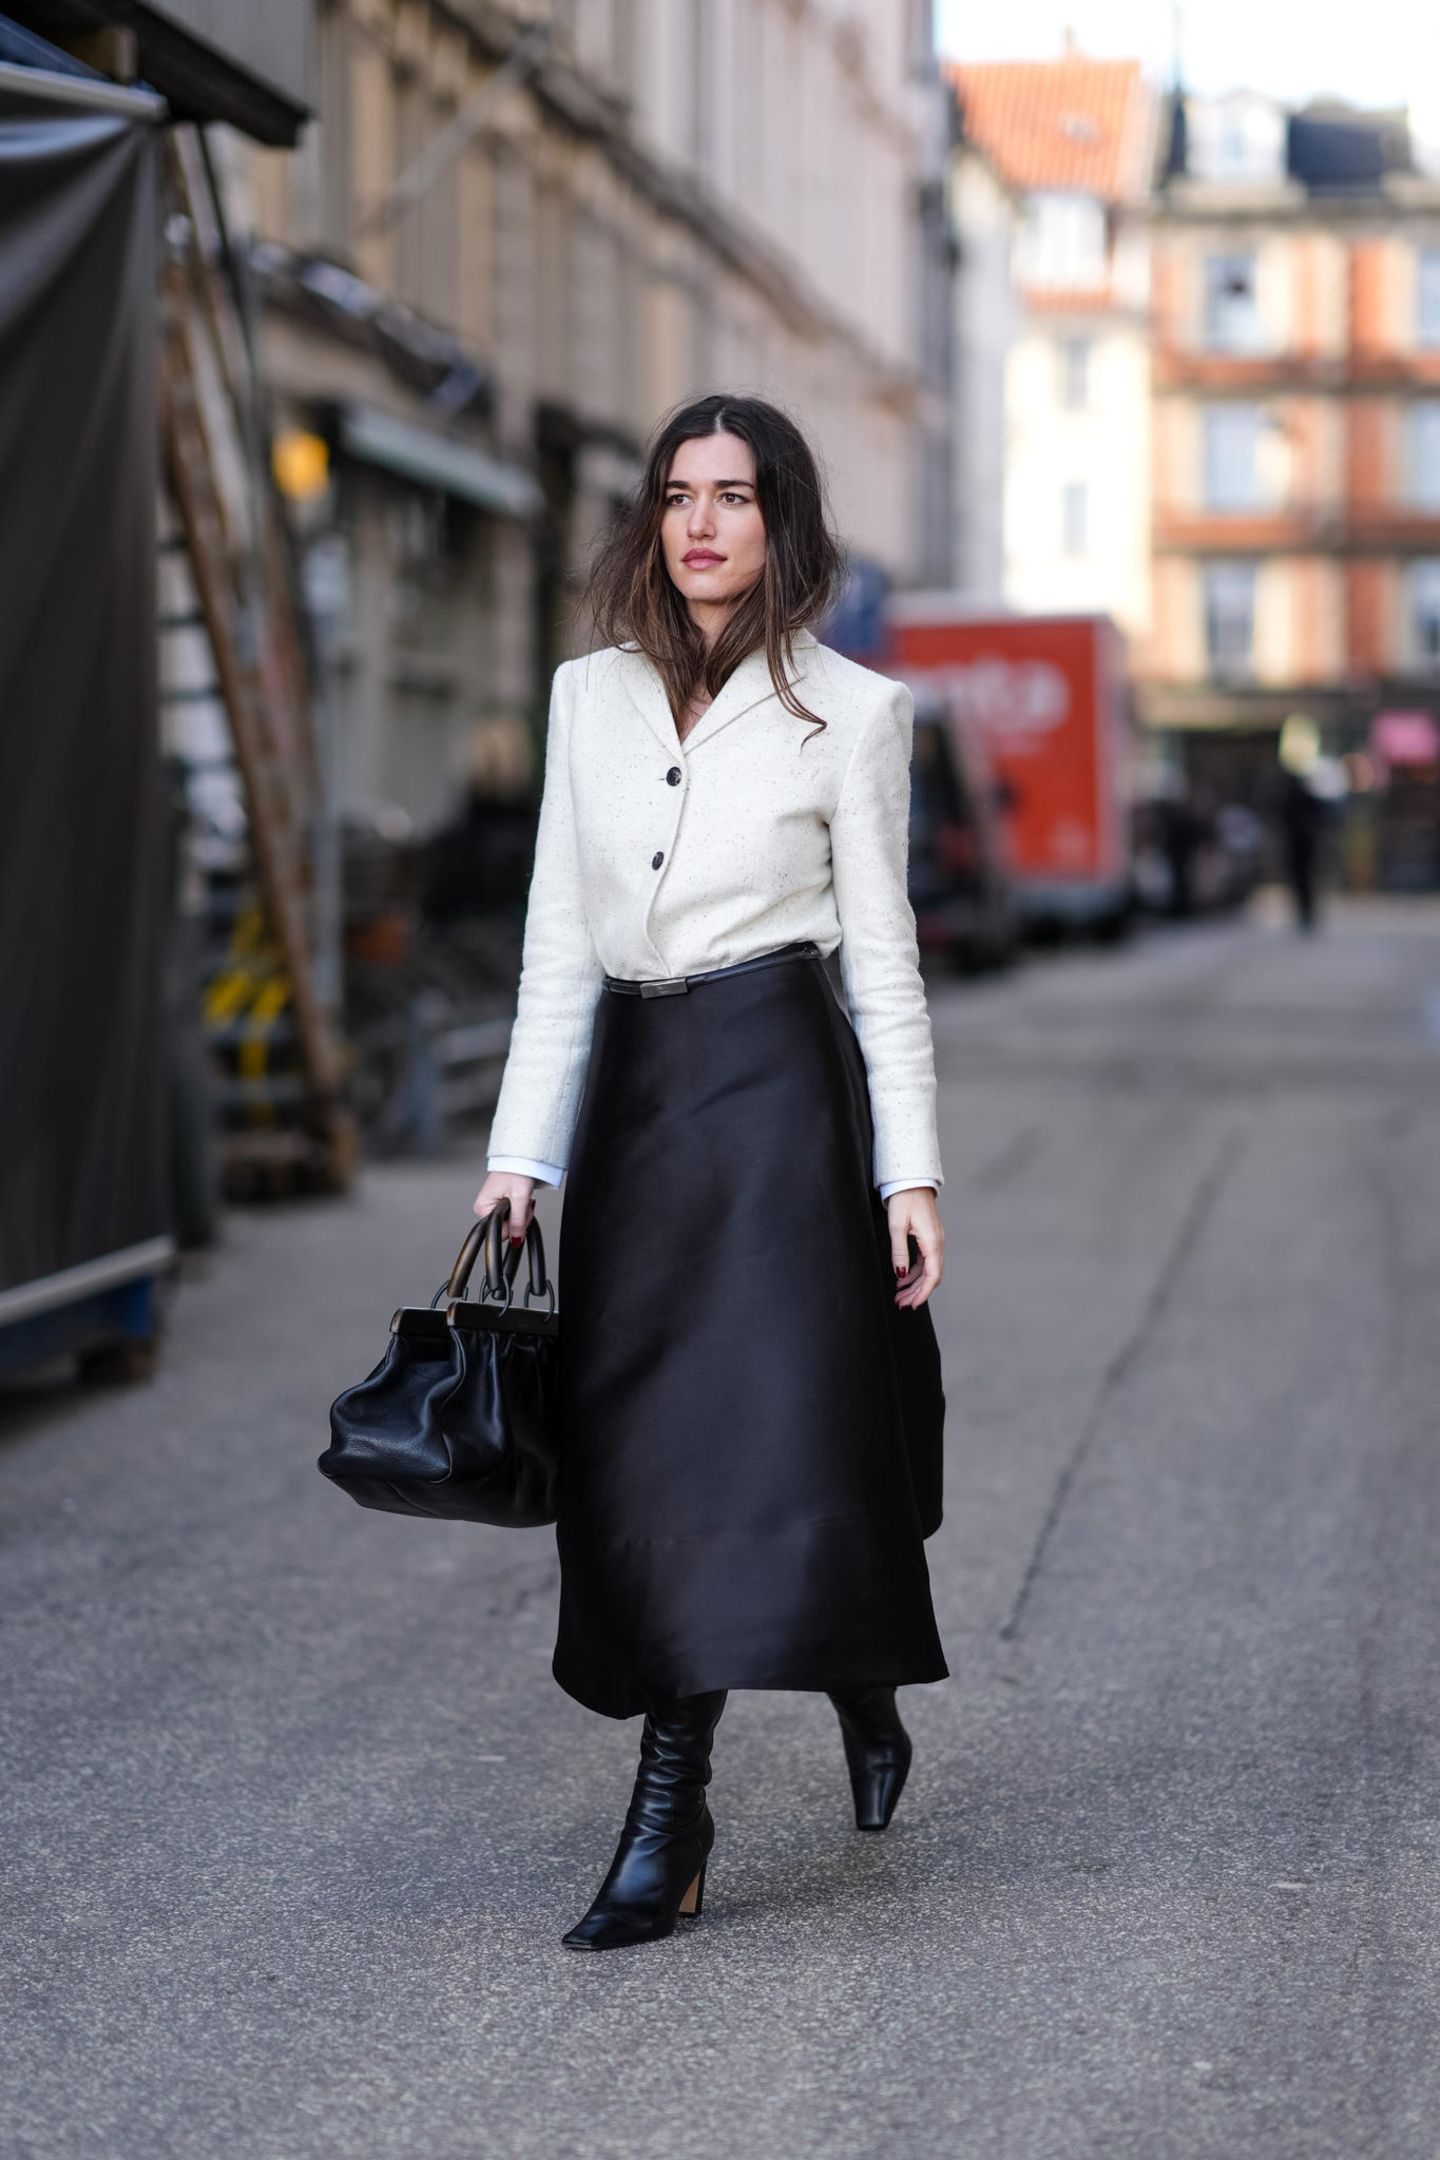 Was ein eleganter Look! In einem schwarzen Satin-Rock und einem weißen Blazer besucht dieser Gast die Fashion Week in Kopenhagen. Abgerundet wird ihr Outfit mit schwarzen Stiefeln und einer schwarzen Tasche, die sie lässig in der Hand trägt. 